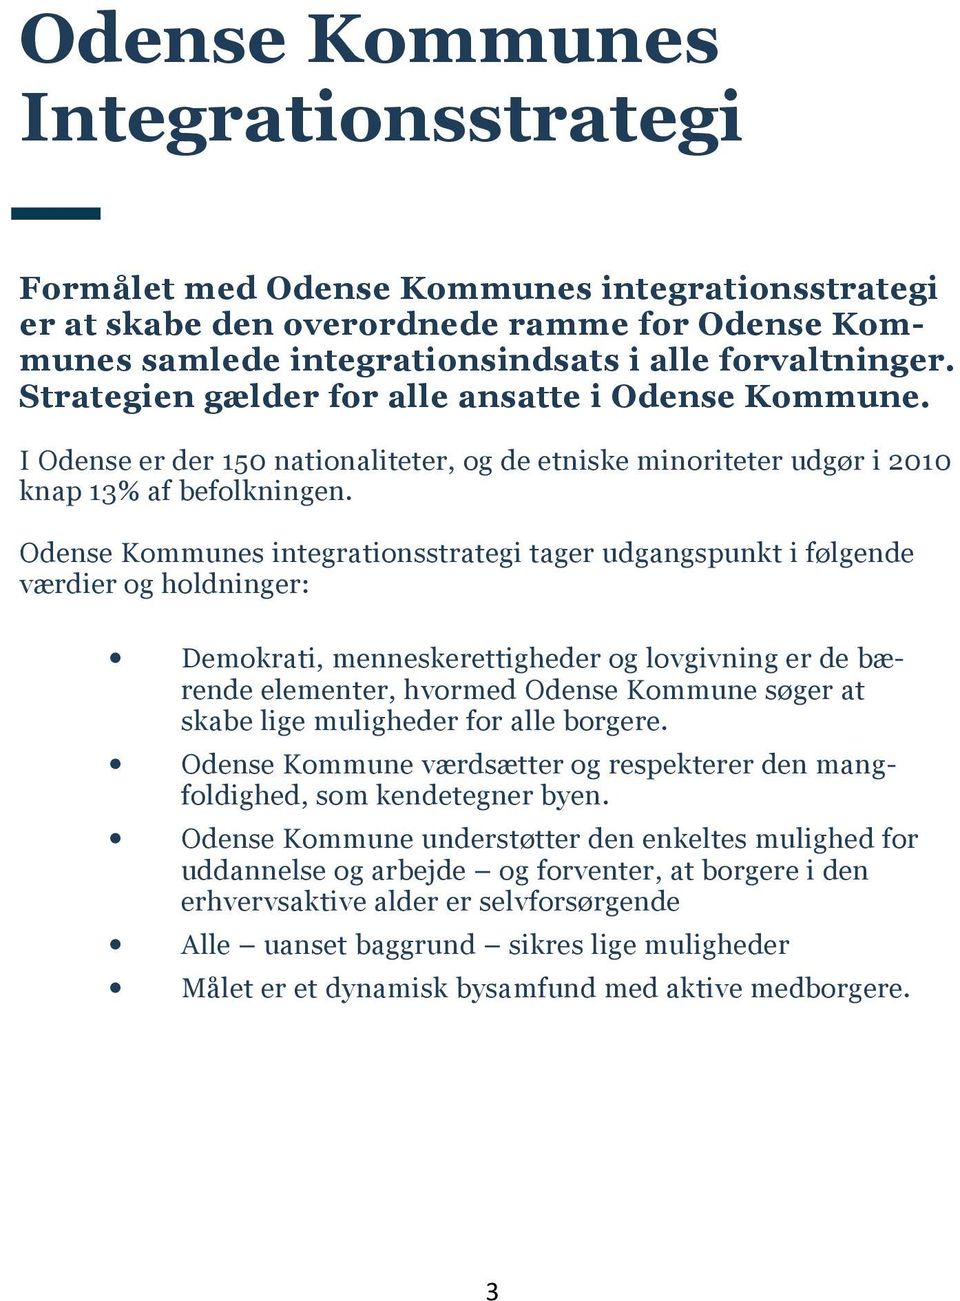 Odense Kommunes integrationsstrategi tager udgangspunkt i følgende værdier og holdninger: Demokrati, menneskerettigheder og lovgivning er de bærende elementer, hvormed Odense Kommune søger at skabe